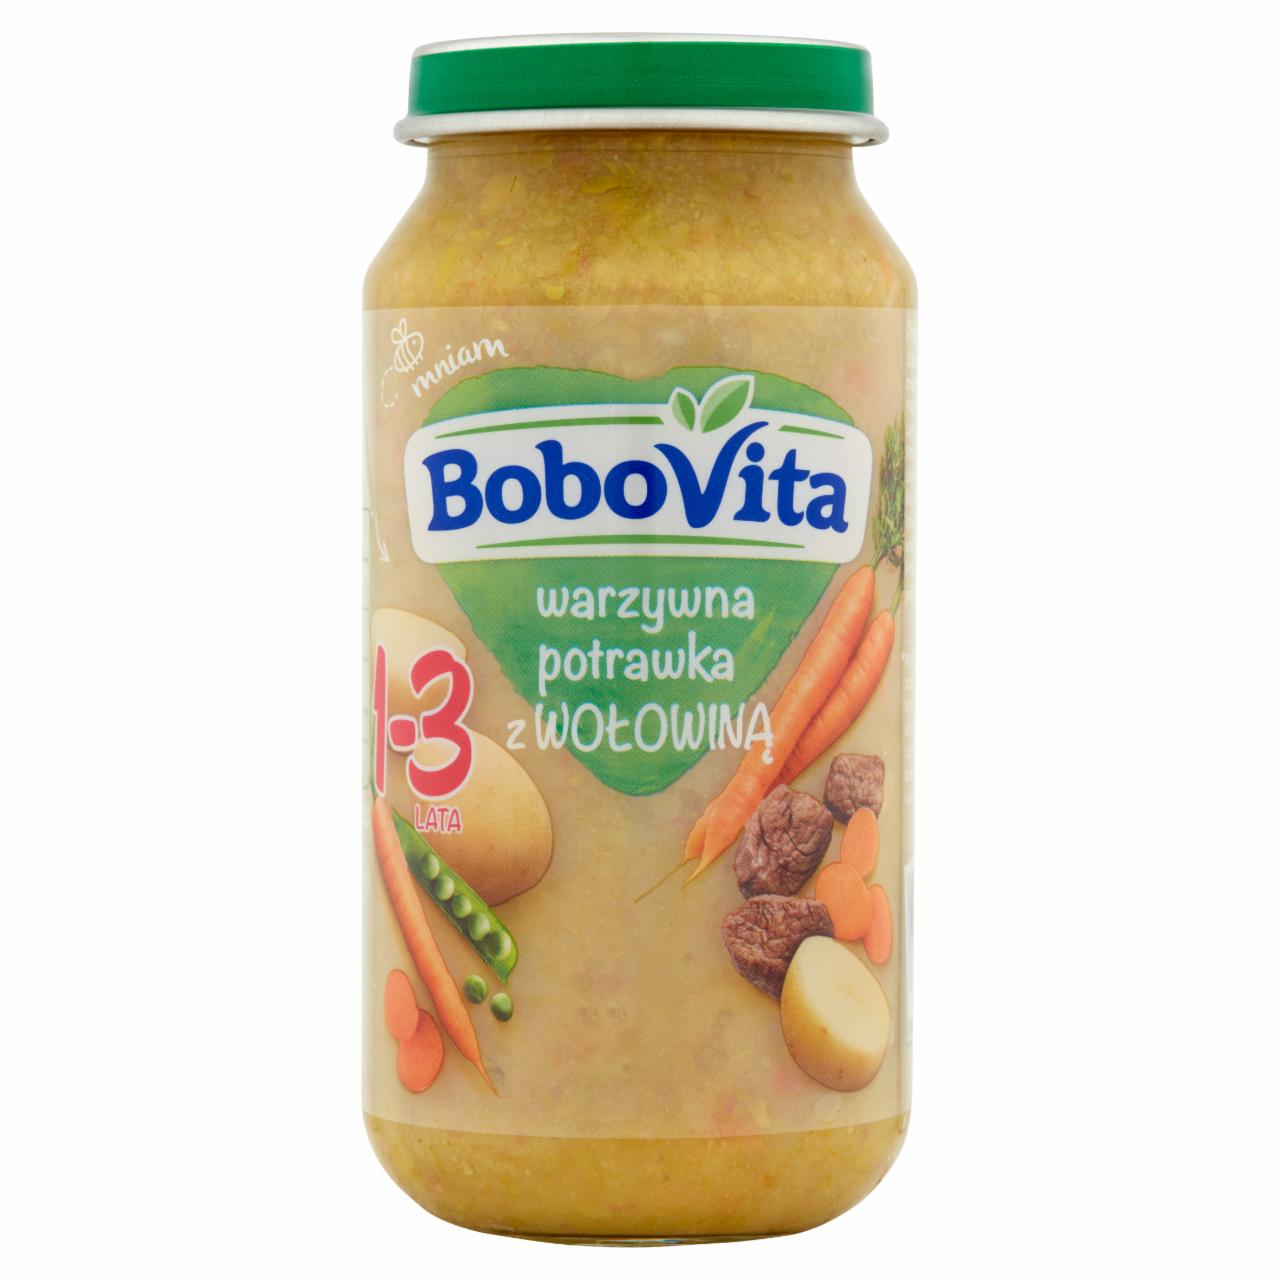 Zdjęcia - BoboVita Warzywna potrawka z wołowiną 1-3 lata 250 g